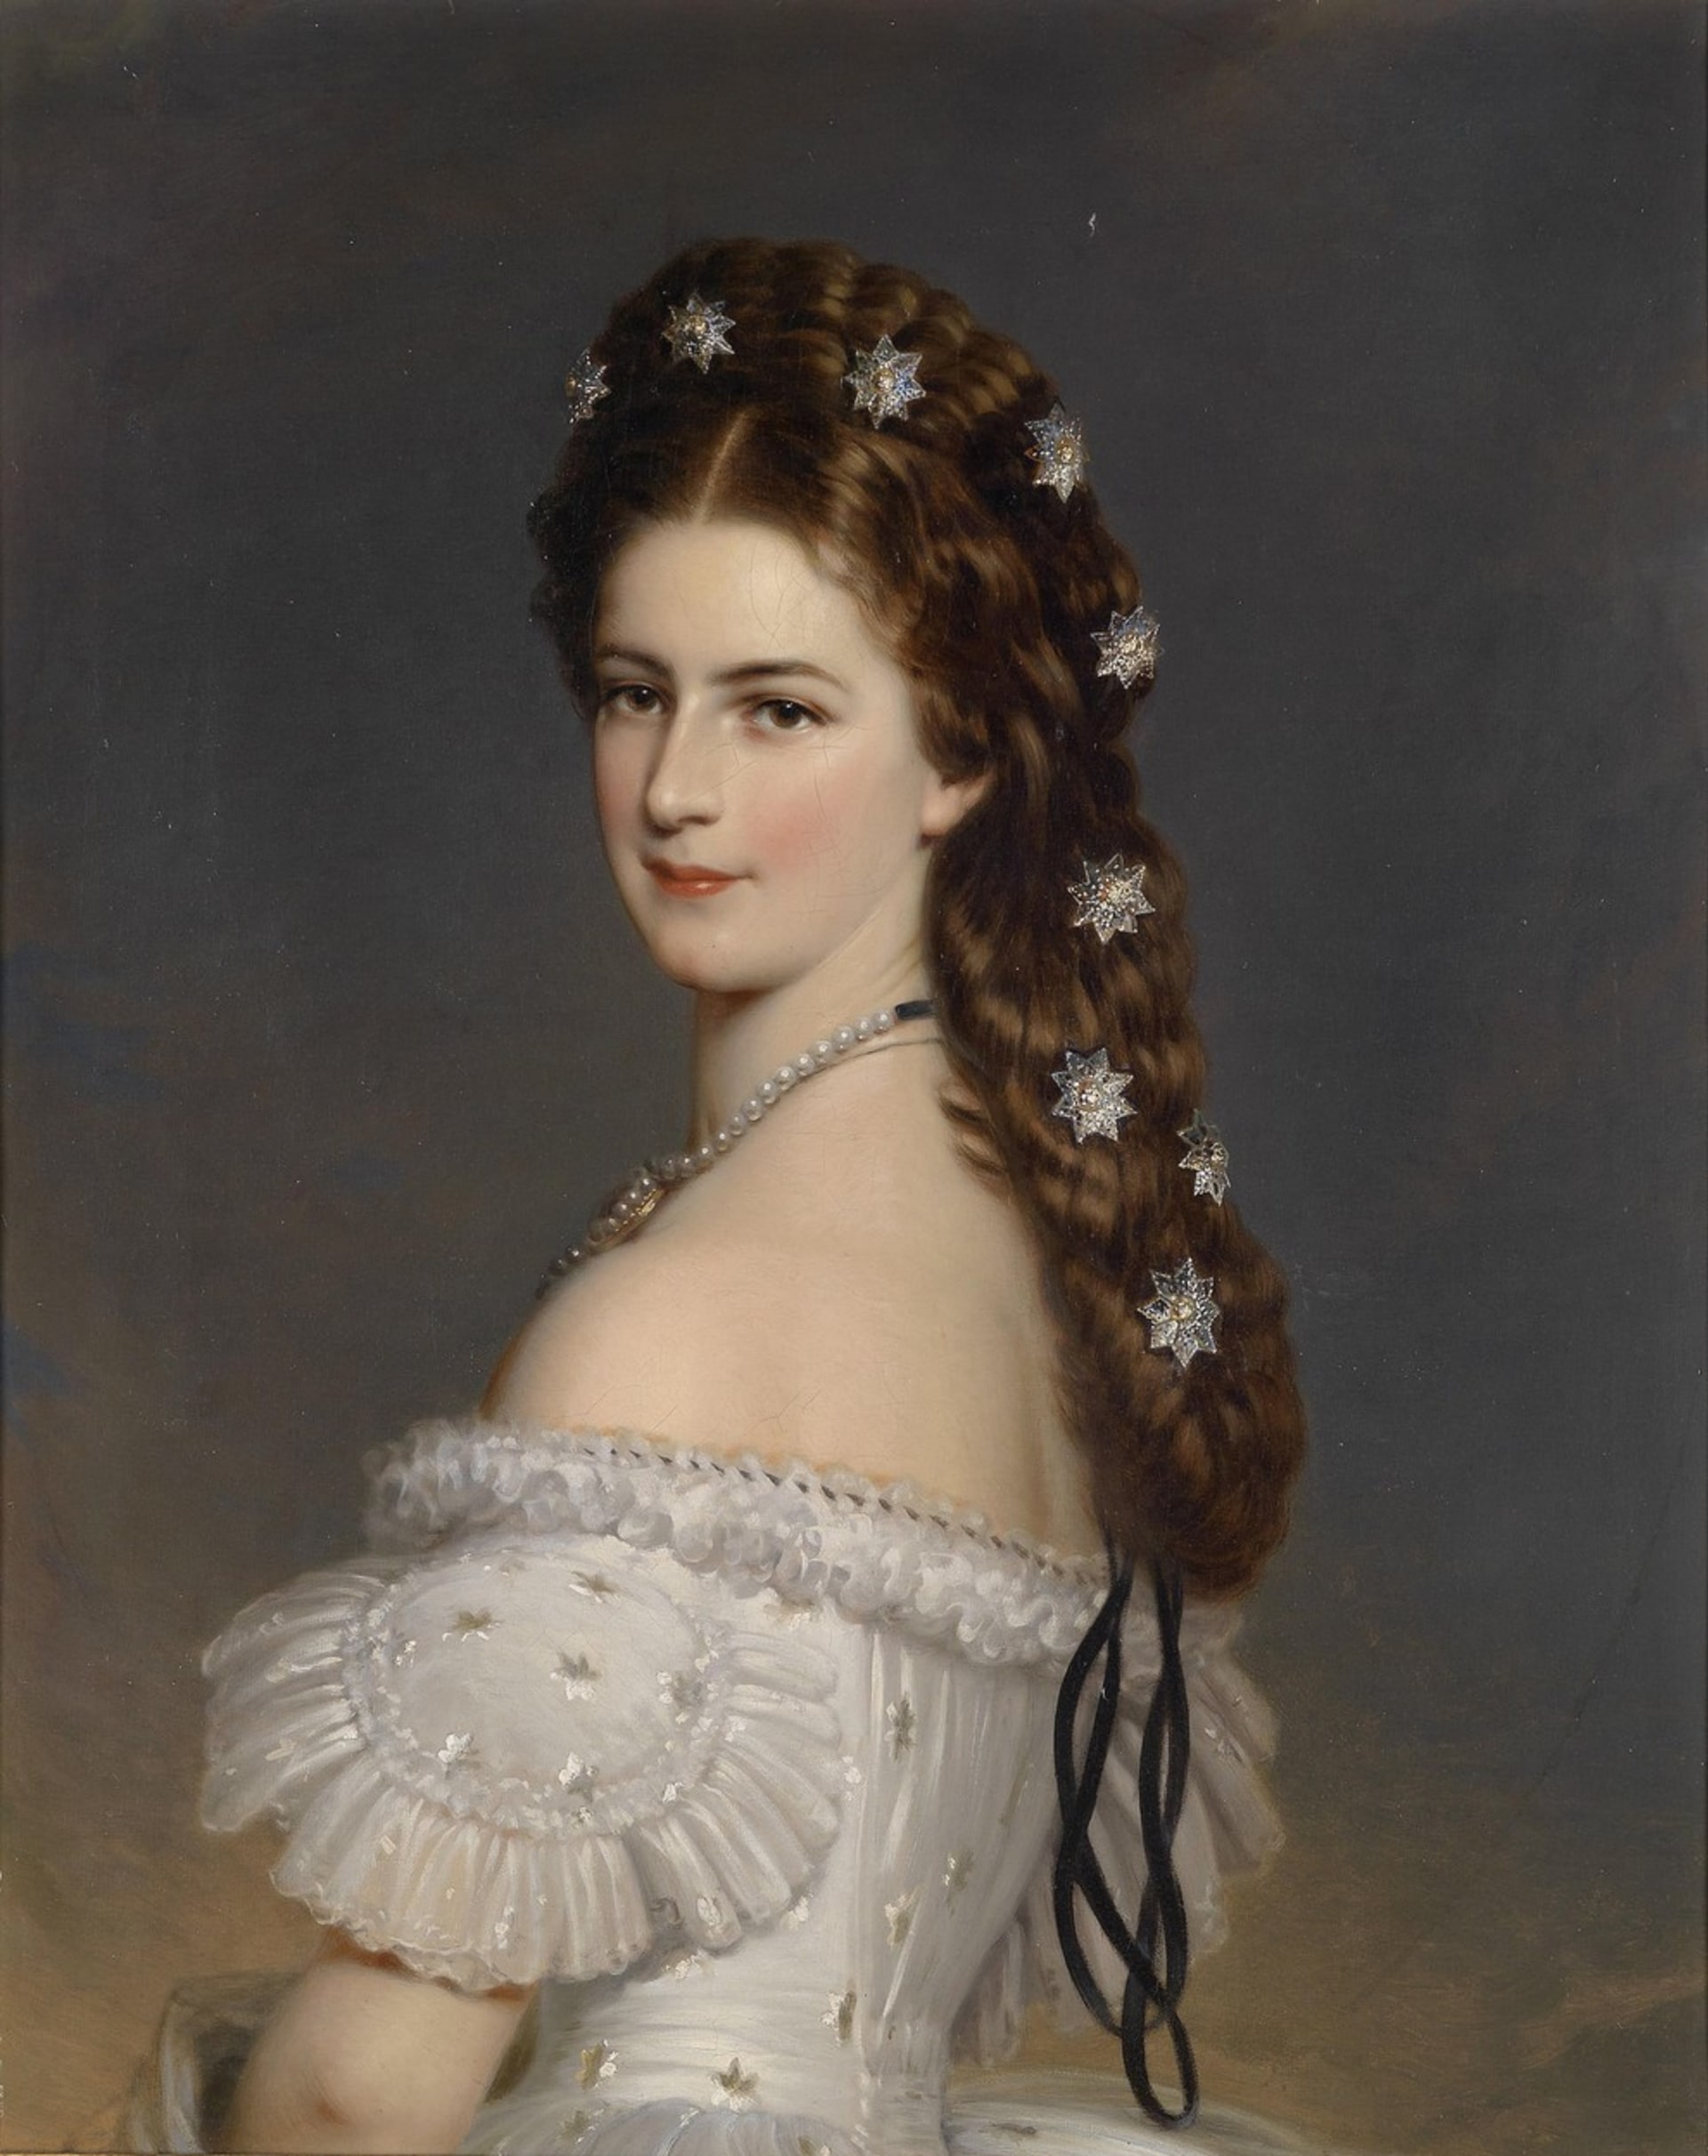 Alžběta Bavorská byla až fanaticky posedlá svou figurou i udržením si věčného mládí.